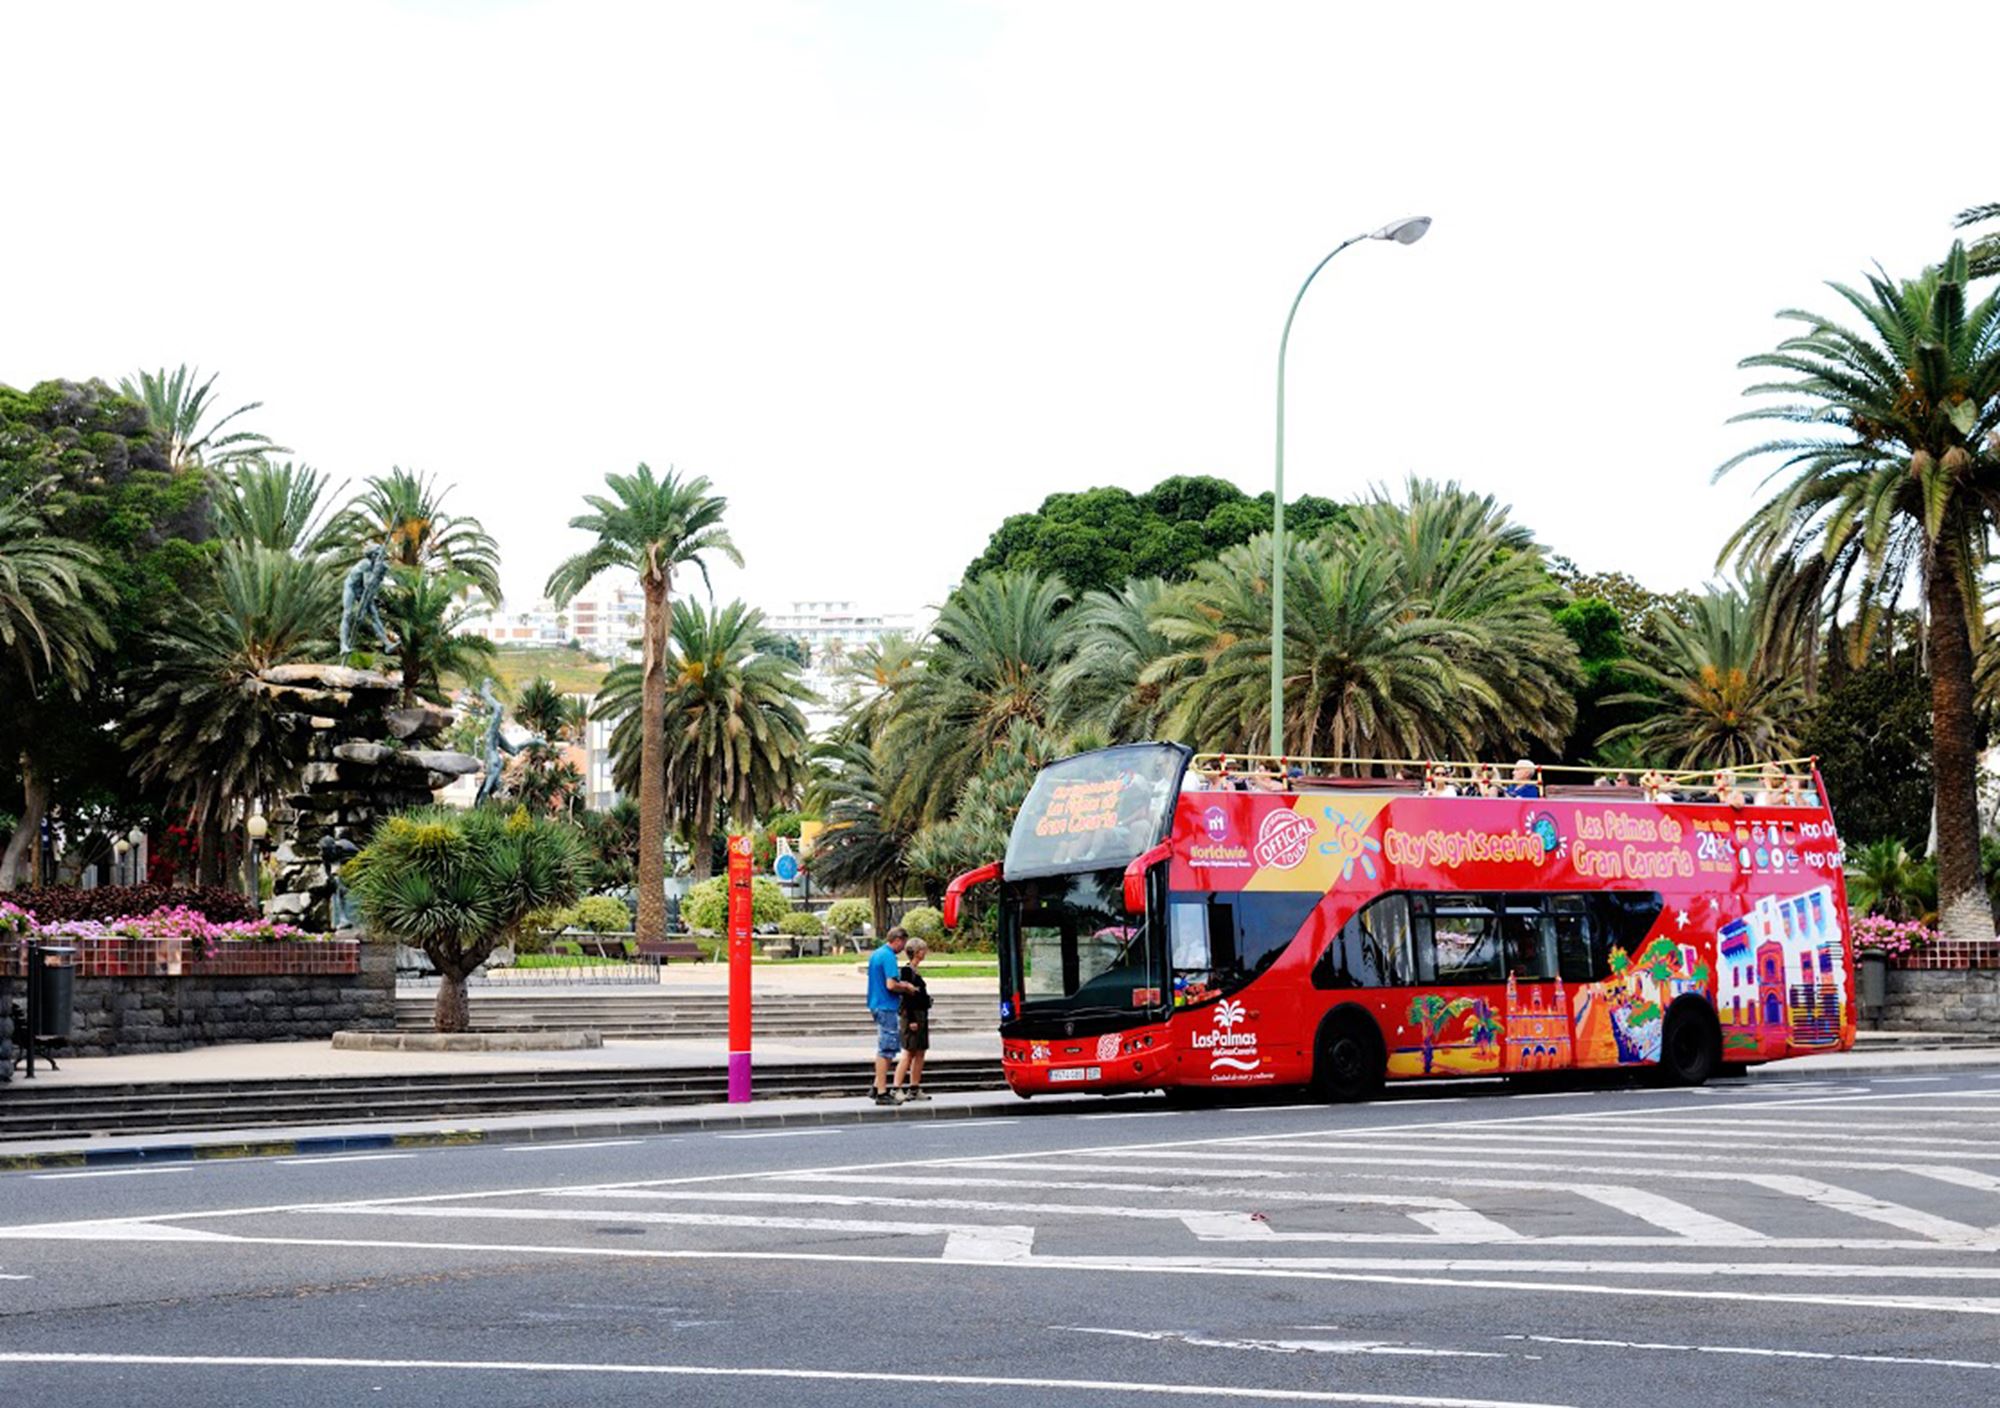 kaufen tickets besucht Touren Fahrkarte karte Touristikbus City Sightseeing Gran Canaria